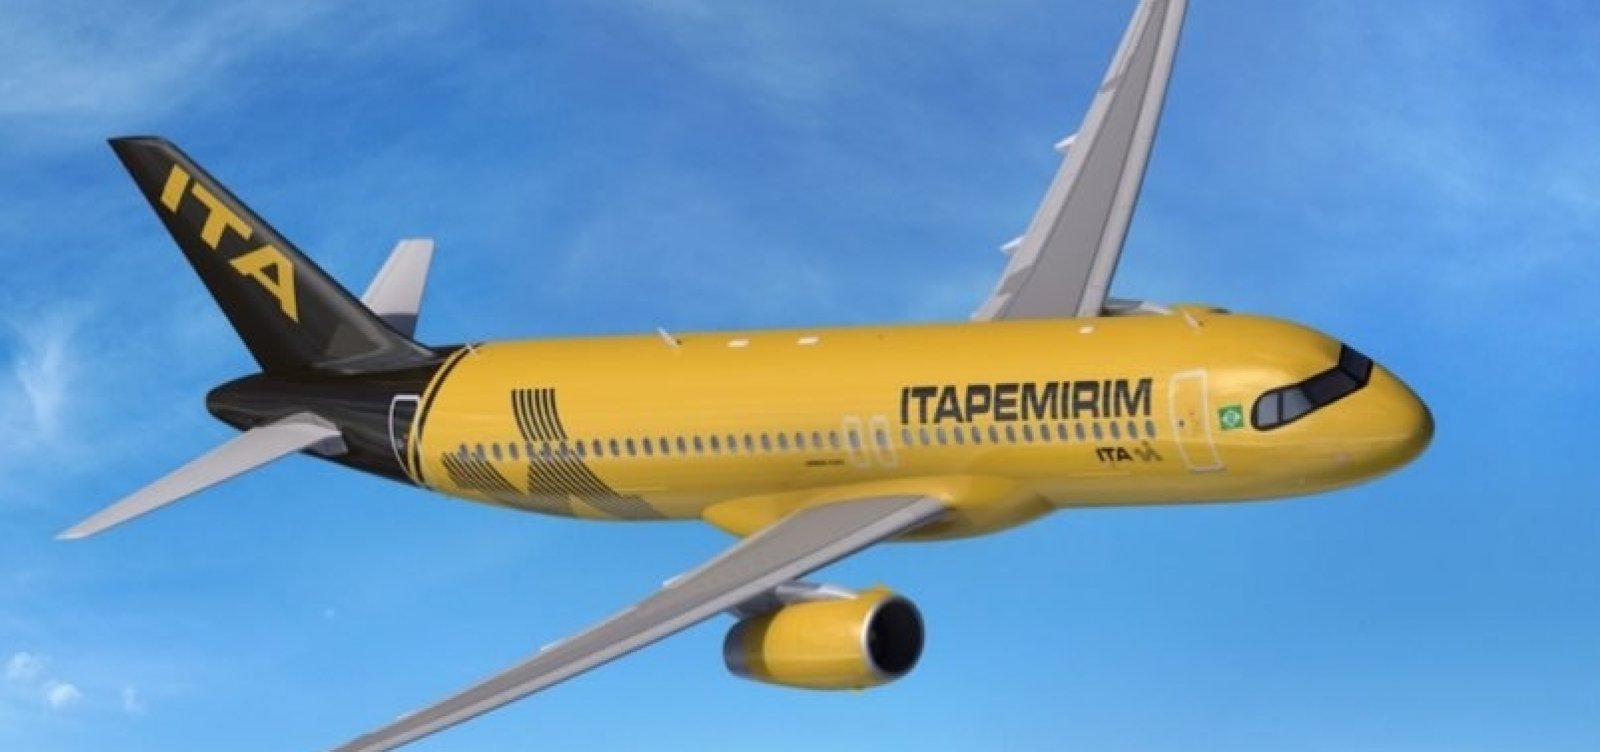 Seis meses após iniciar operação, Itapemirim anuncia "suspensão temporária" de voos